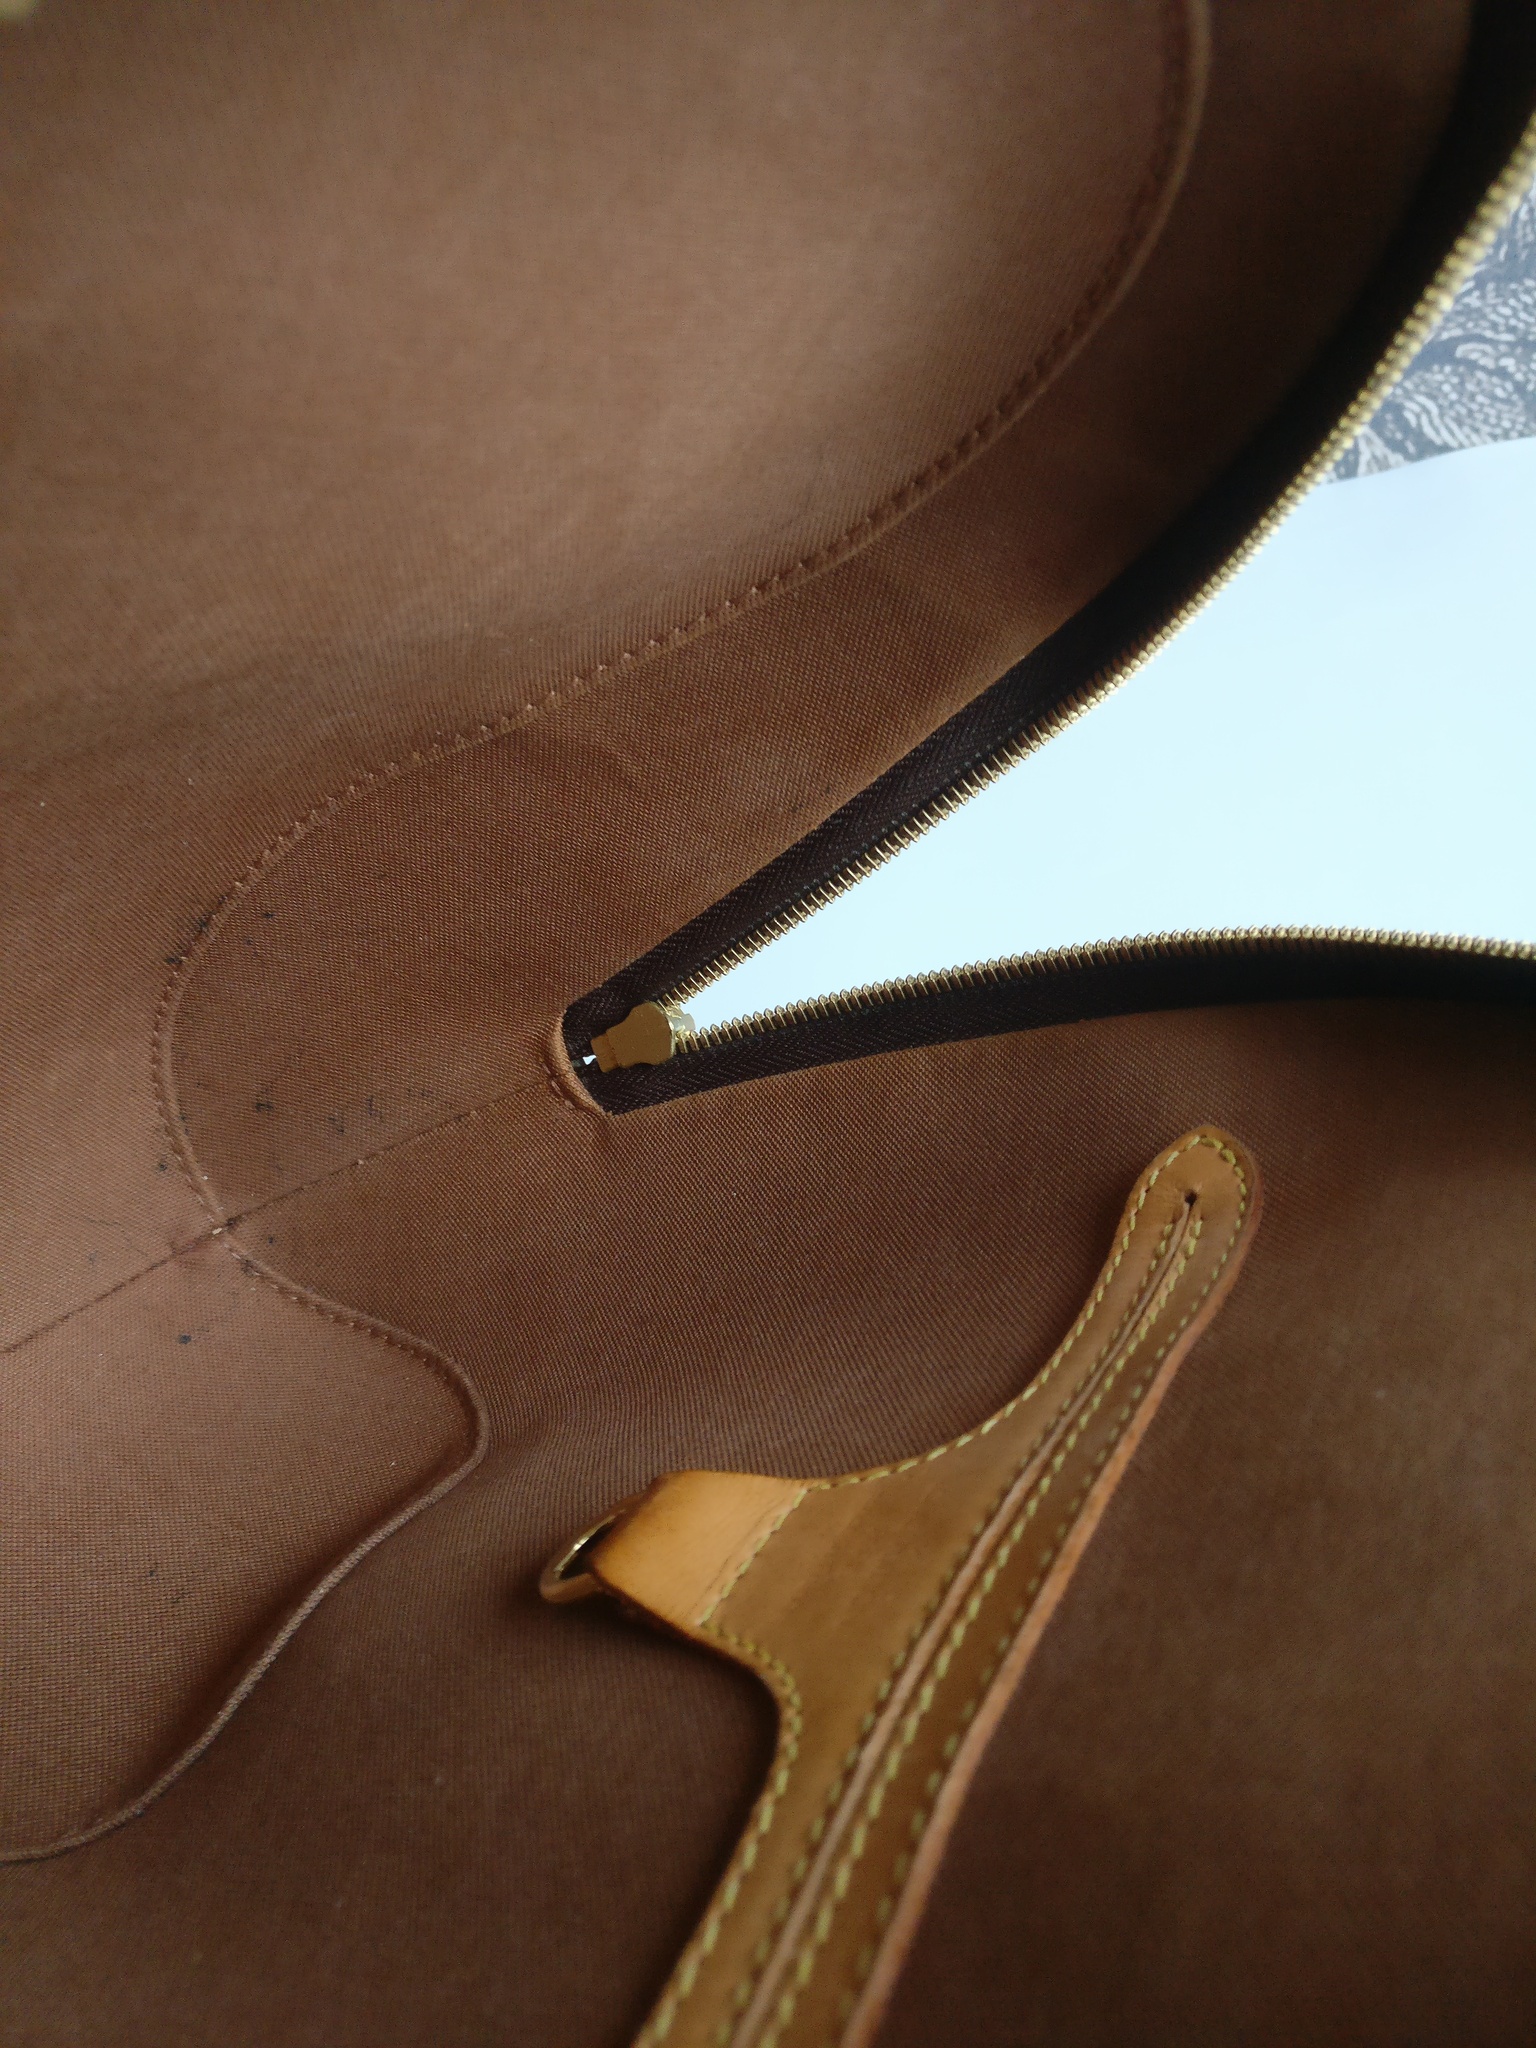 Louis Vuitton Ellipse backpack